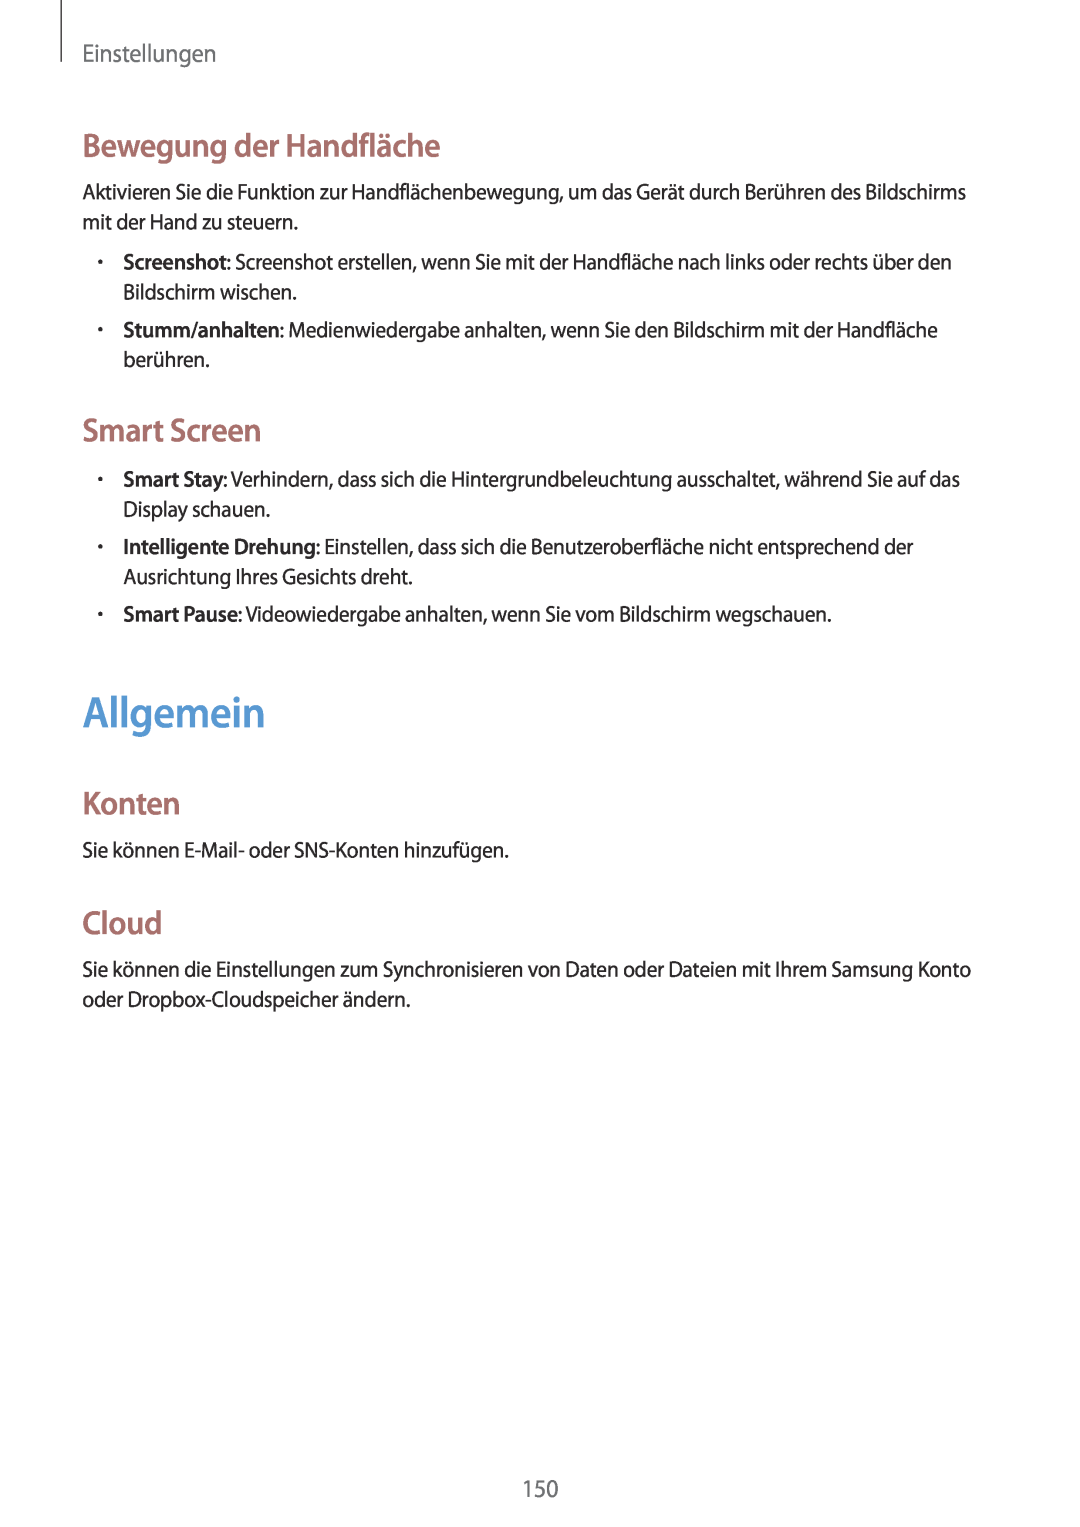 Samsung SM-P9000ZWATPH, SM-P9000ZWAATO manual Allgemein, Bewegung der Handfläche, Smart Screen, Konten, Cloud, Einstellungen 